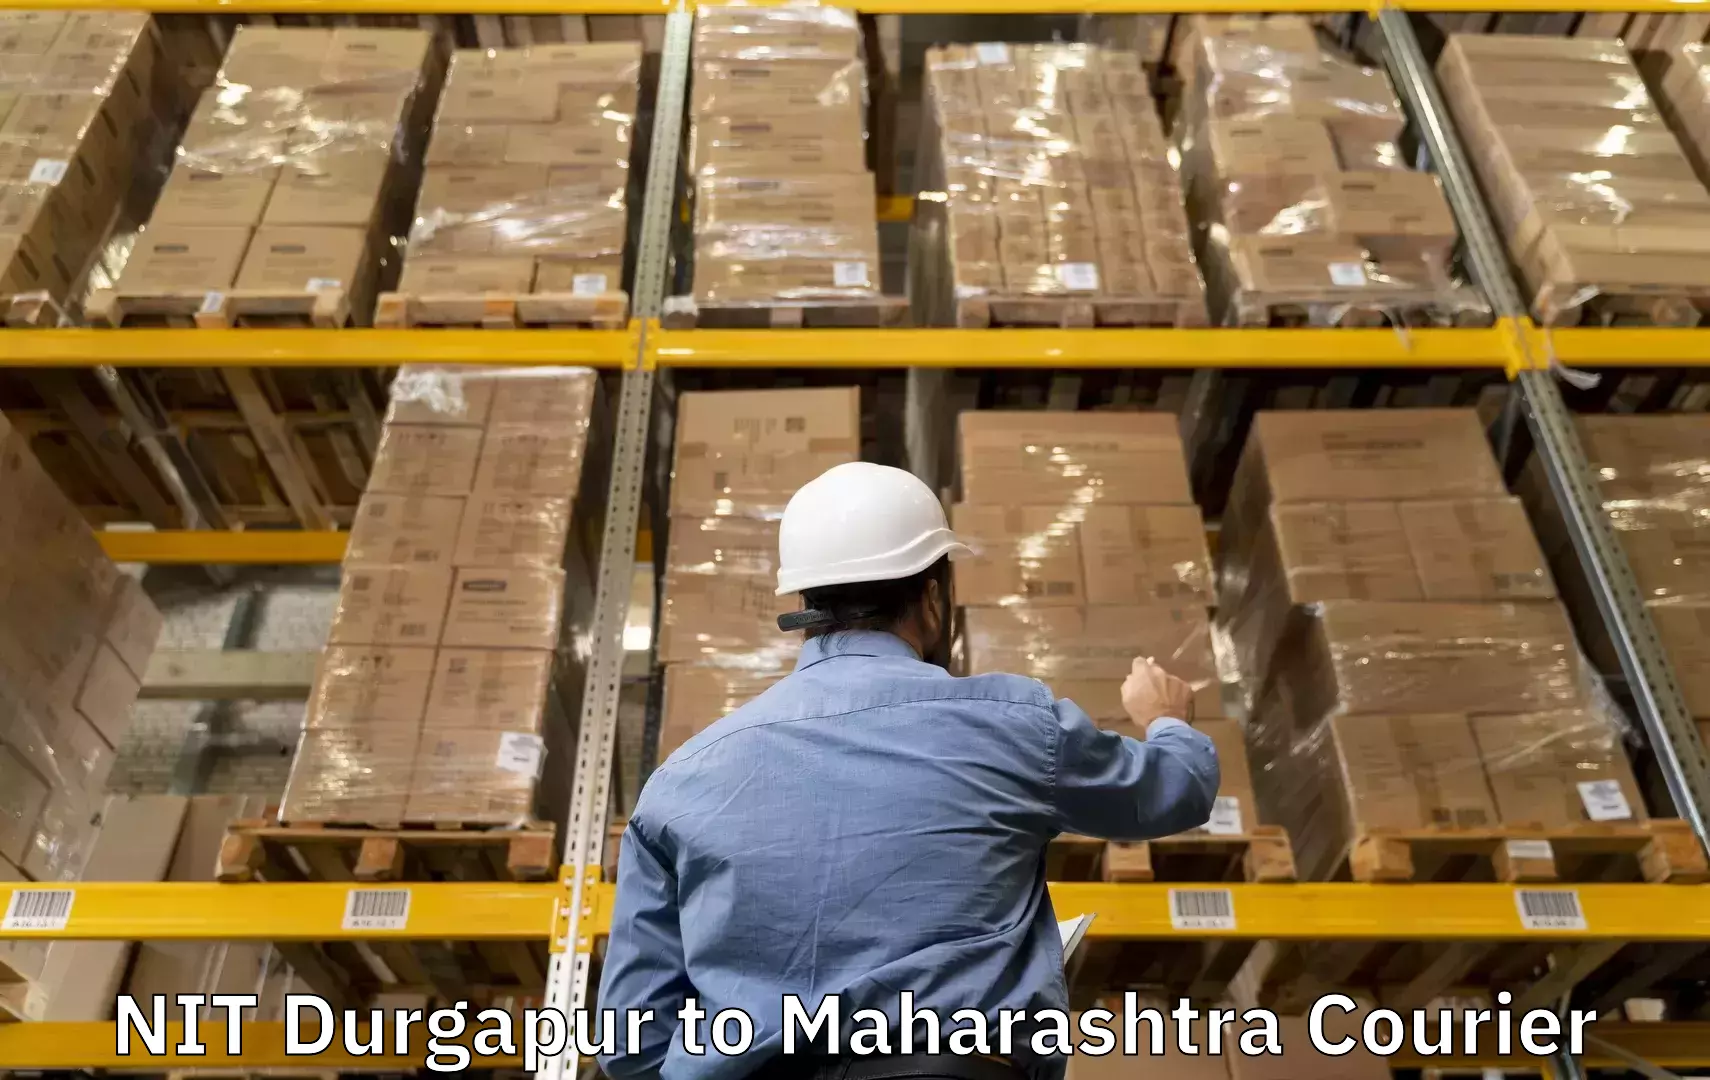 Luggage shipment tracking NIT Durgapur to Vita